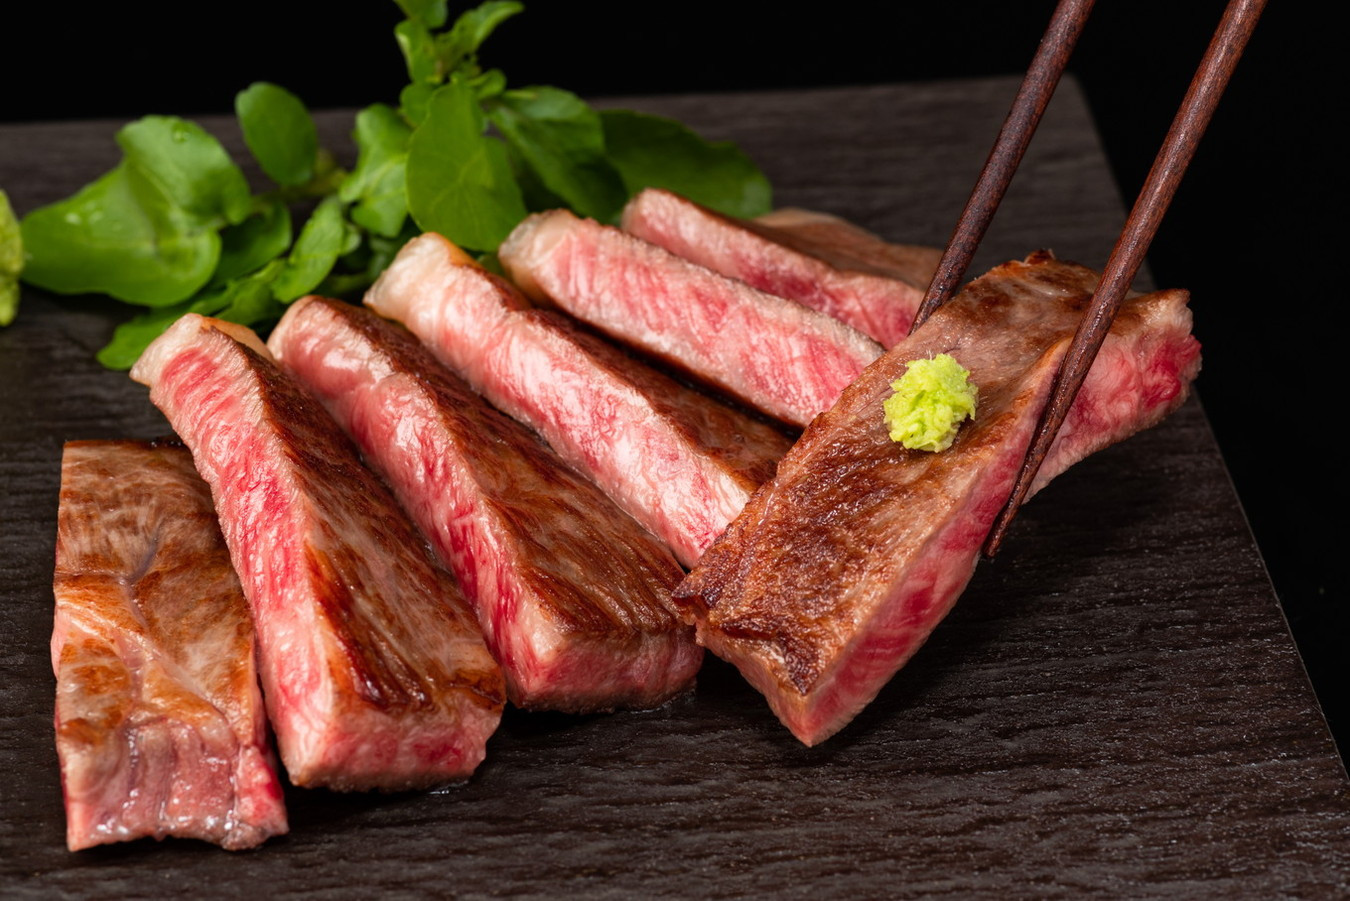 滋賀県近江八幡市の日本三大和牛 牛肉の最高峰 近江牛 をステーキで ふるさと納税 ふるさとチョイス